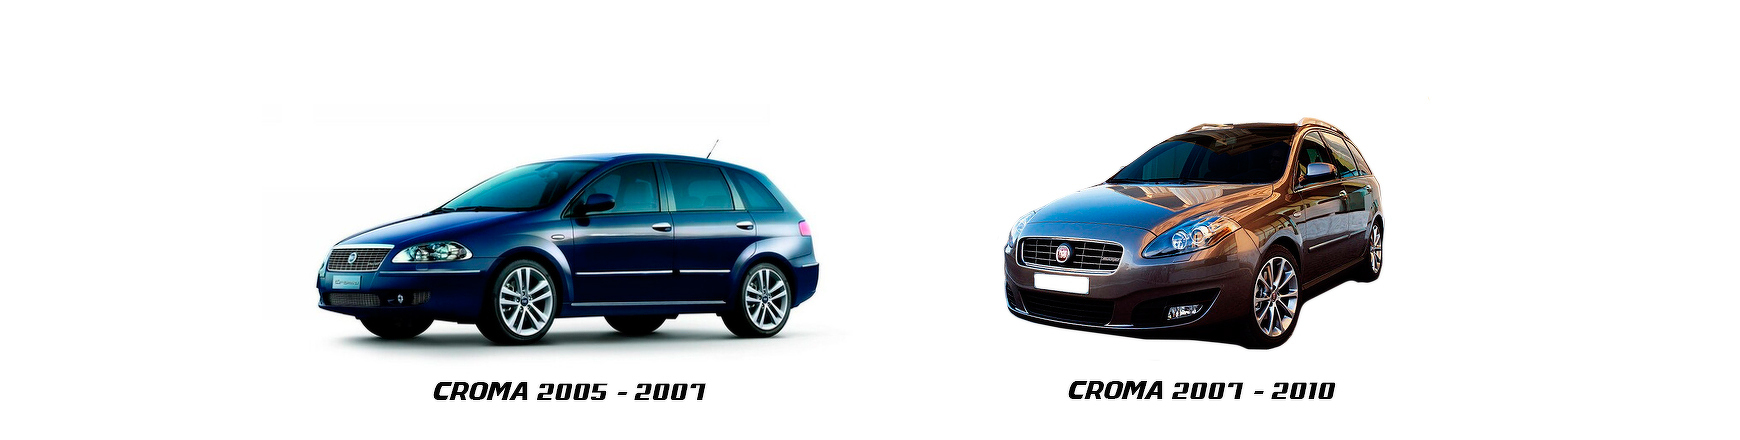 Recambios nuevos de Fiat Croma de 2005, 2006, 2007 y 2008.